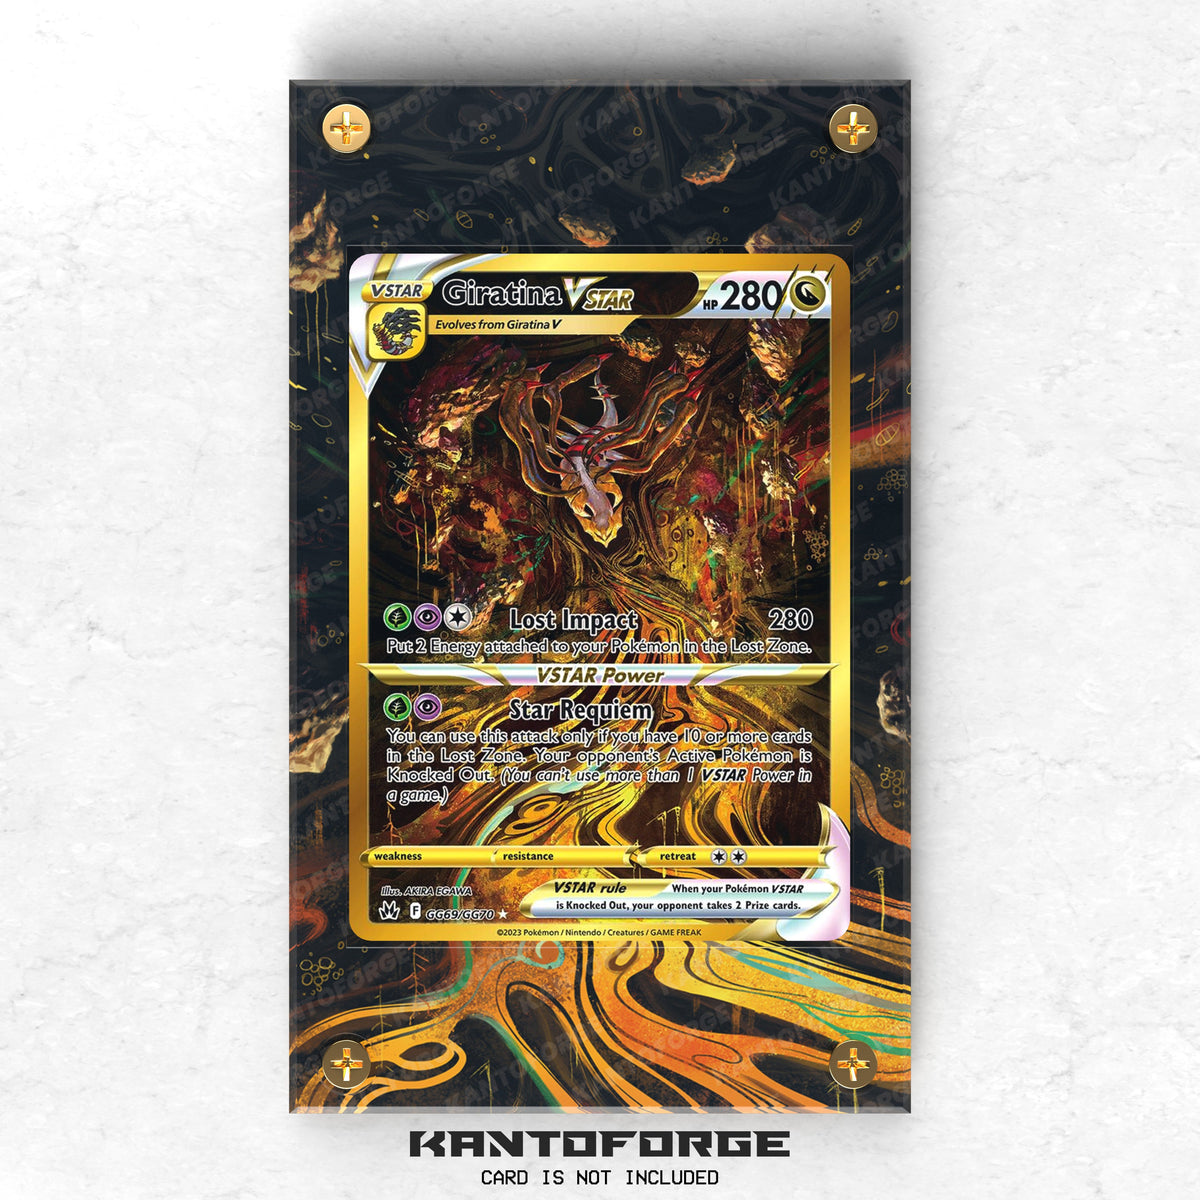 Giratina VSTAR GG69/GG70 - Pokémon Extended Artwork Protective Card Display Case